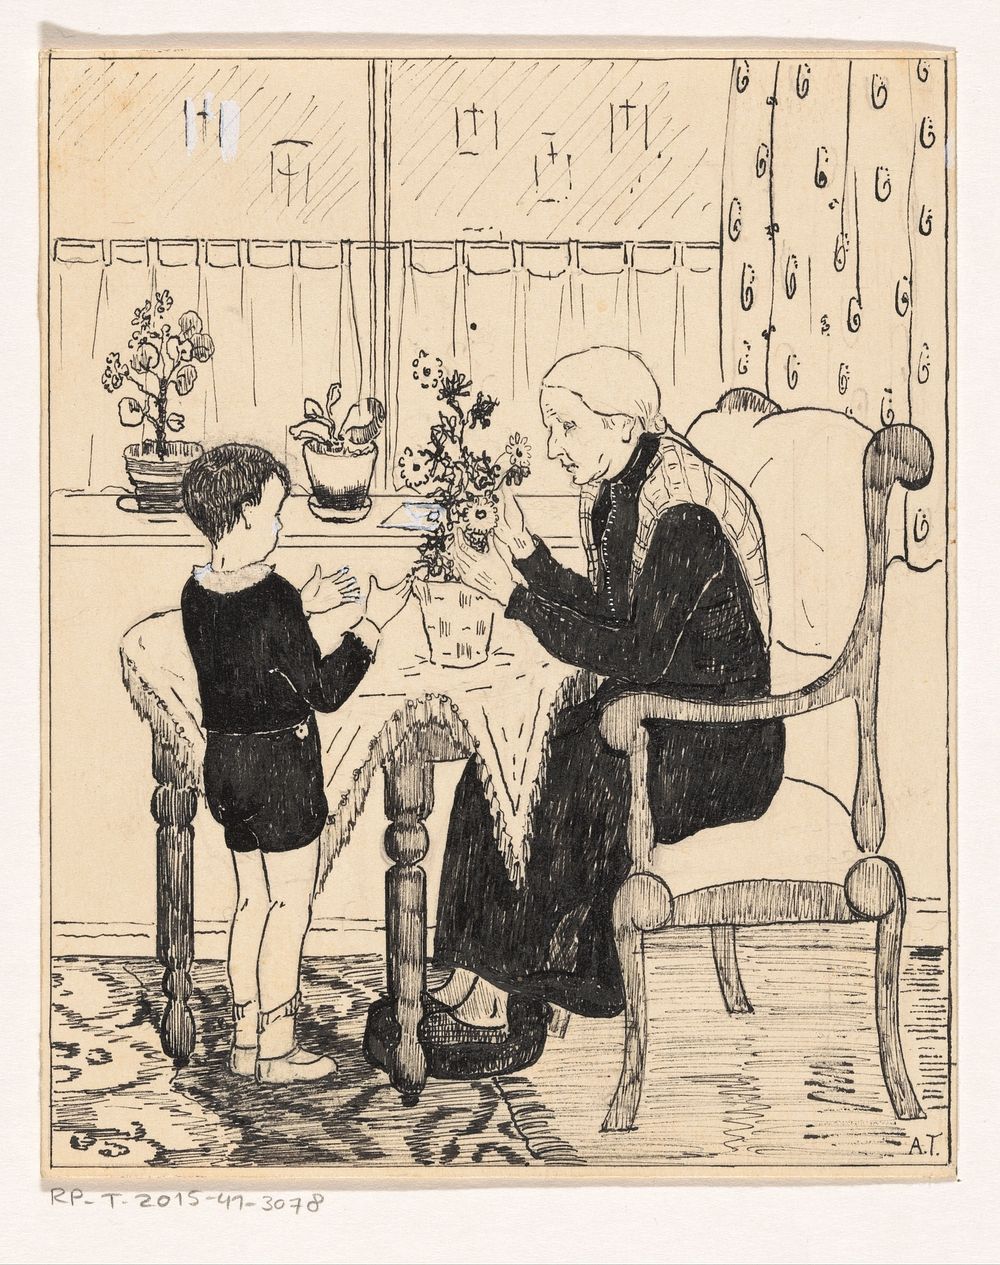 Oude vrouw schikt een boeket (c. 1925 - c. 1935) by A Tinbergen